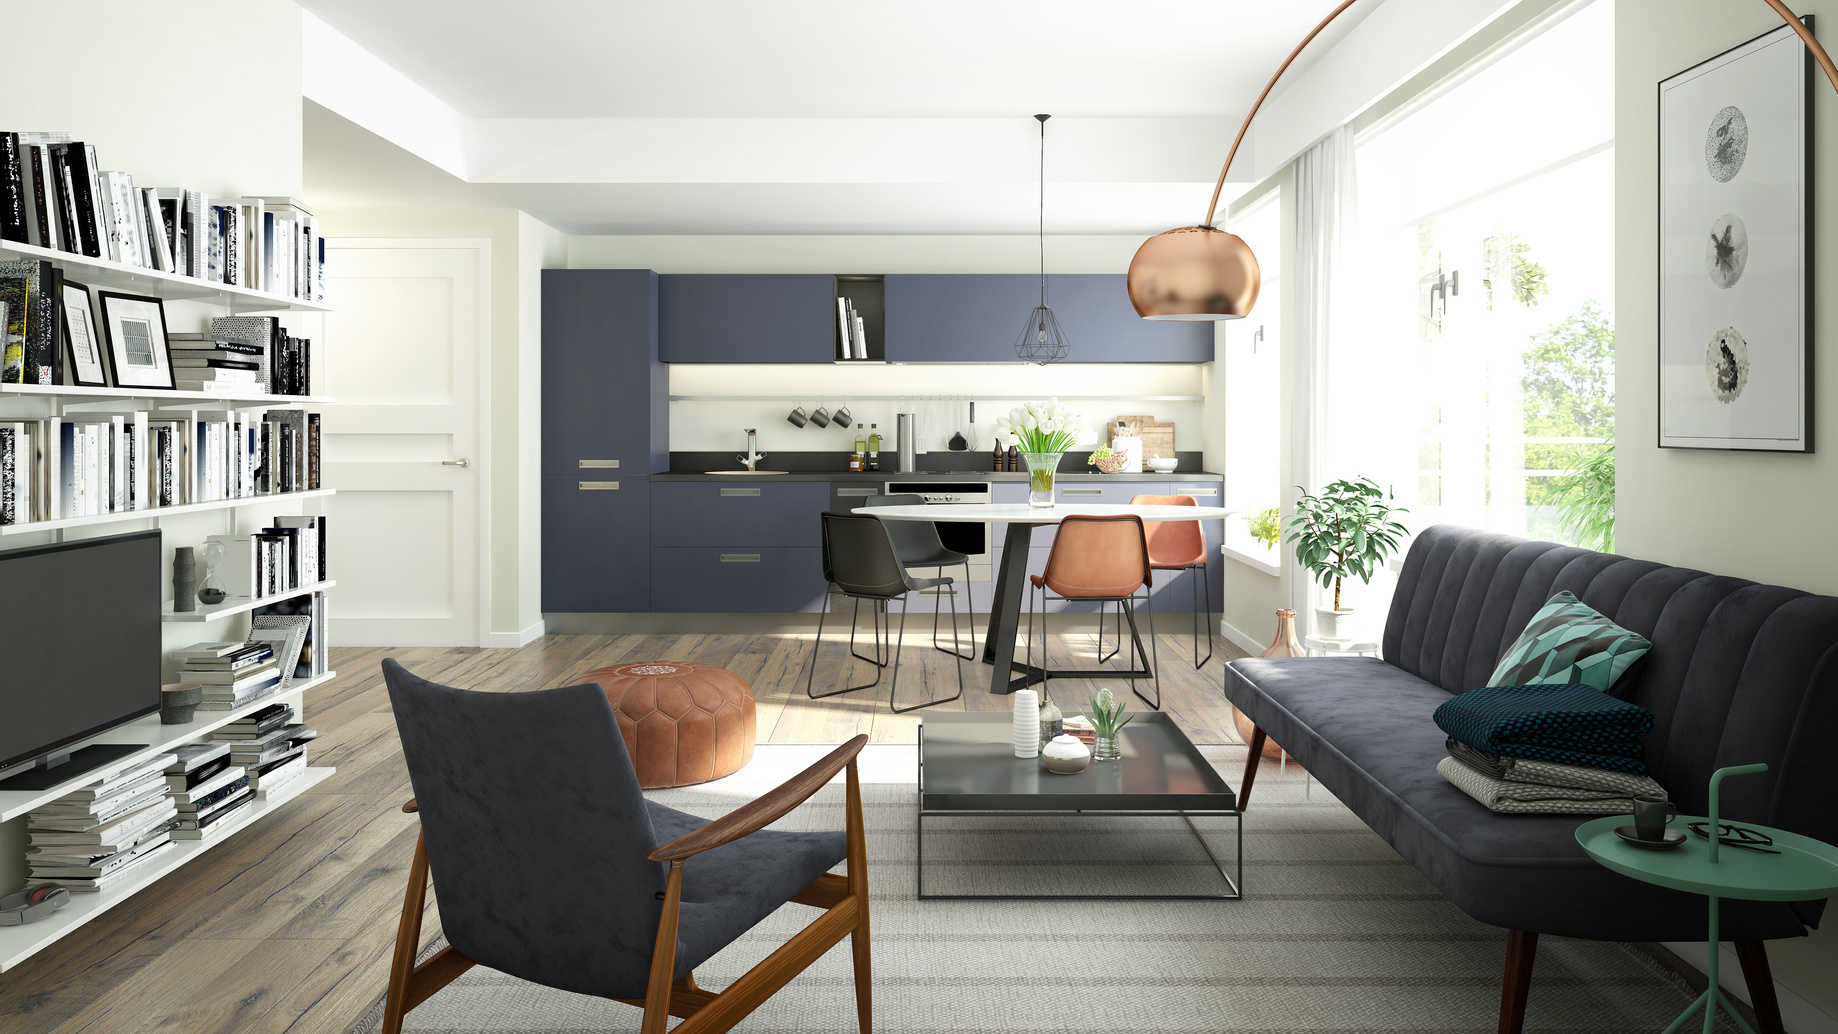 Pour finir septembre en beauté, Futura vous proposent 5 bons plans pour faire des économies sur vos matériaux et meubles pour la maison. © imagewell10, Fotolia